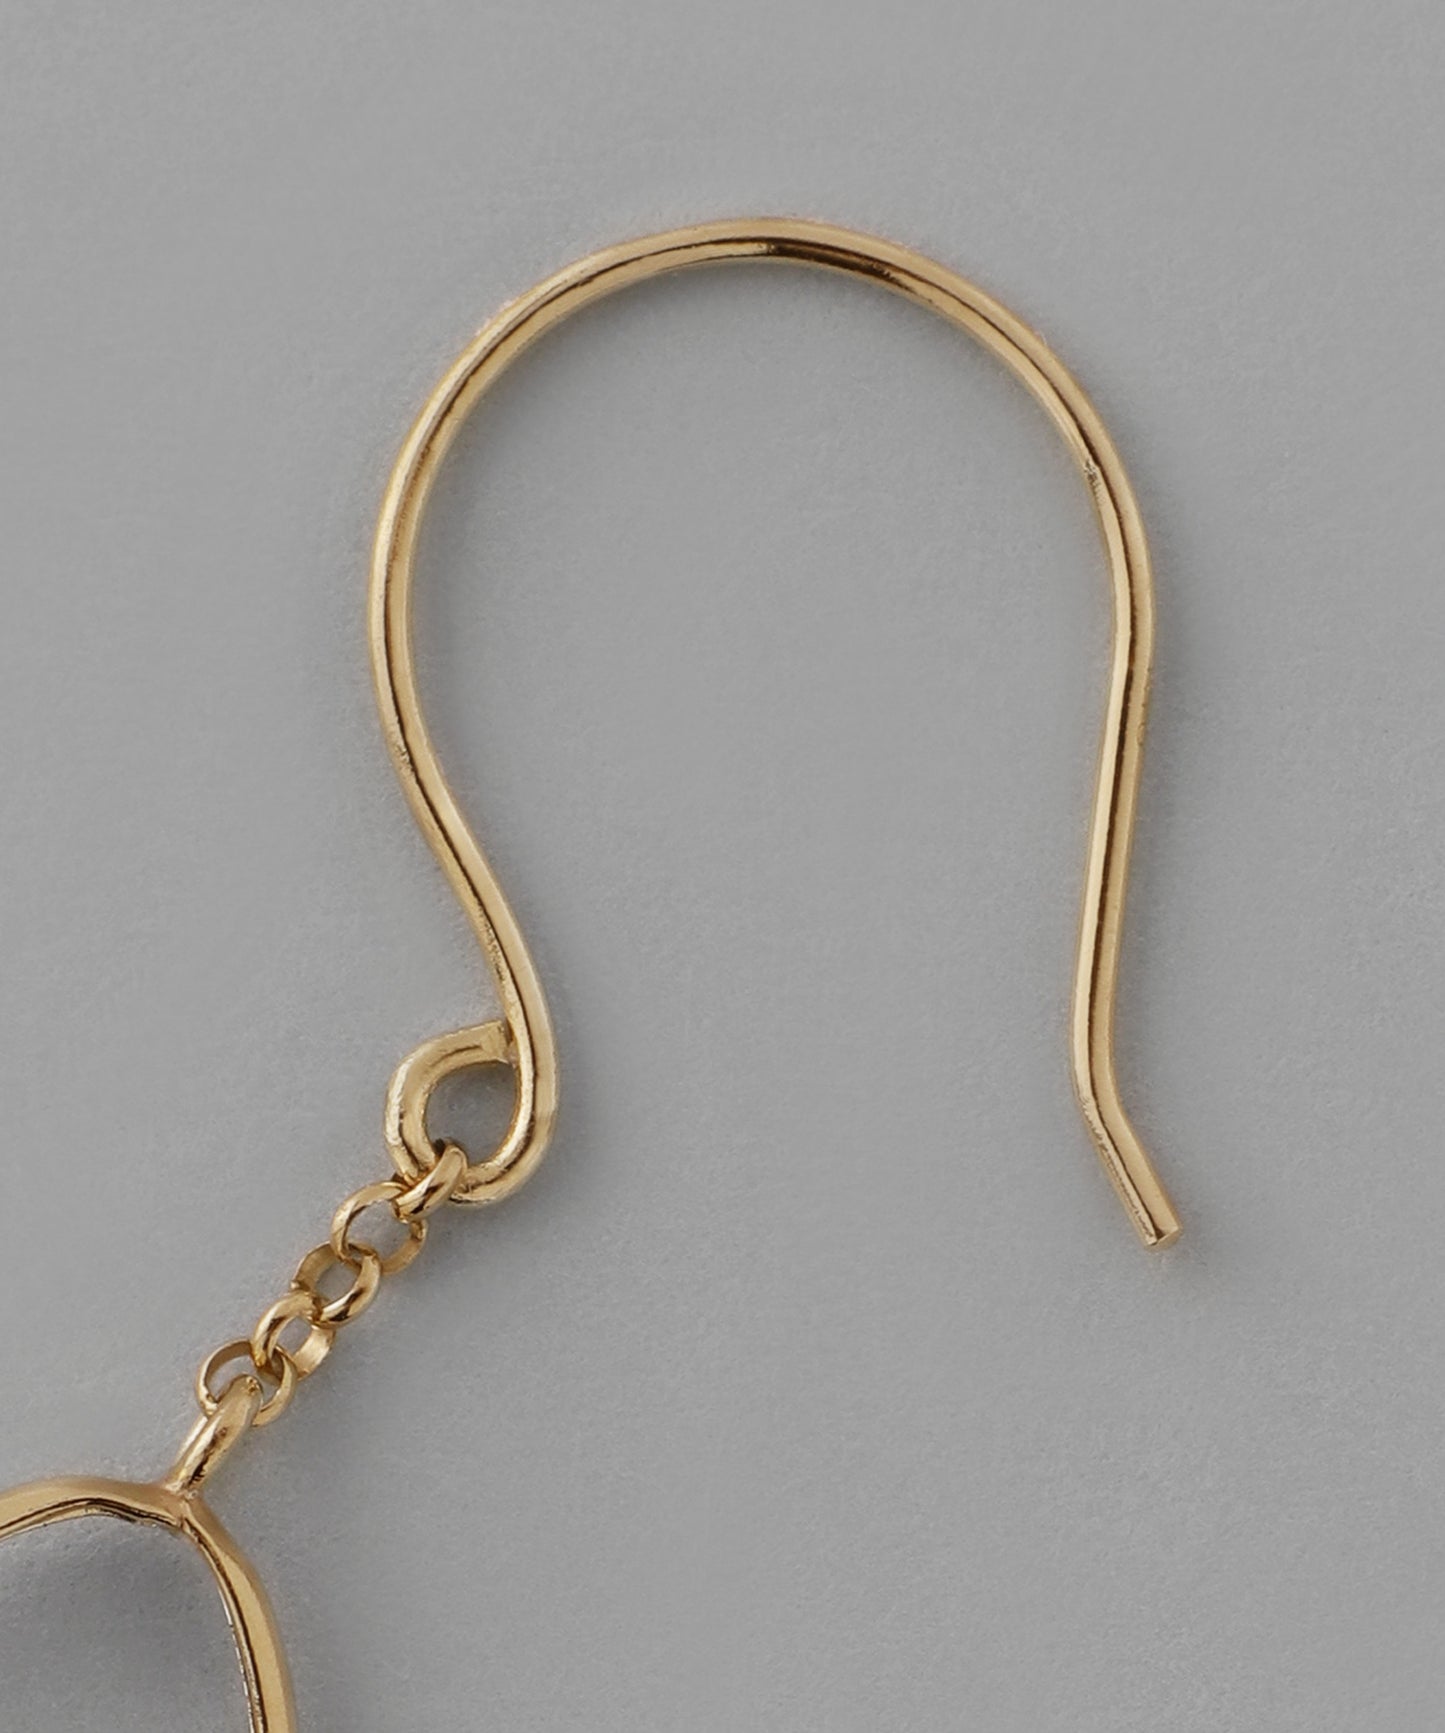 Freshwater Pearl x Oval Hook Earrings [10K]